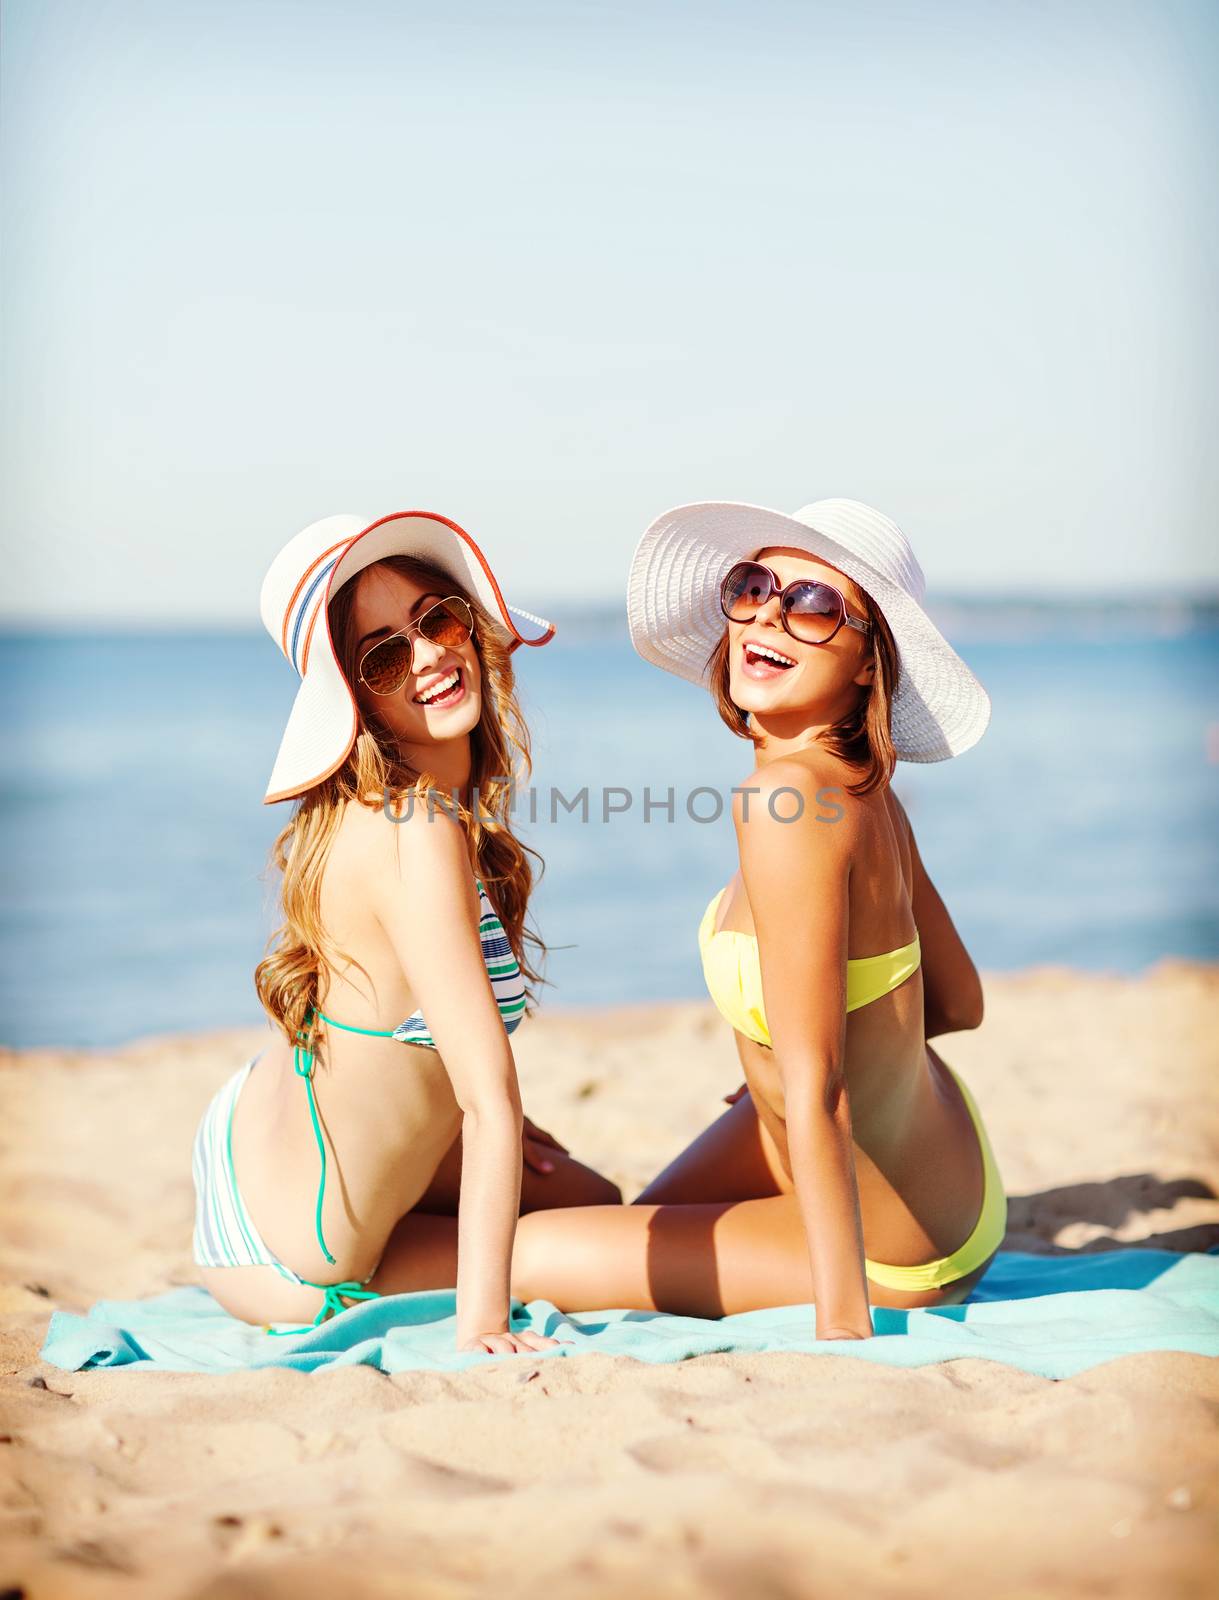 girls sunbathing on the beach by dolgachov